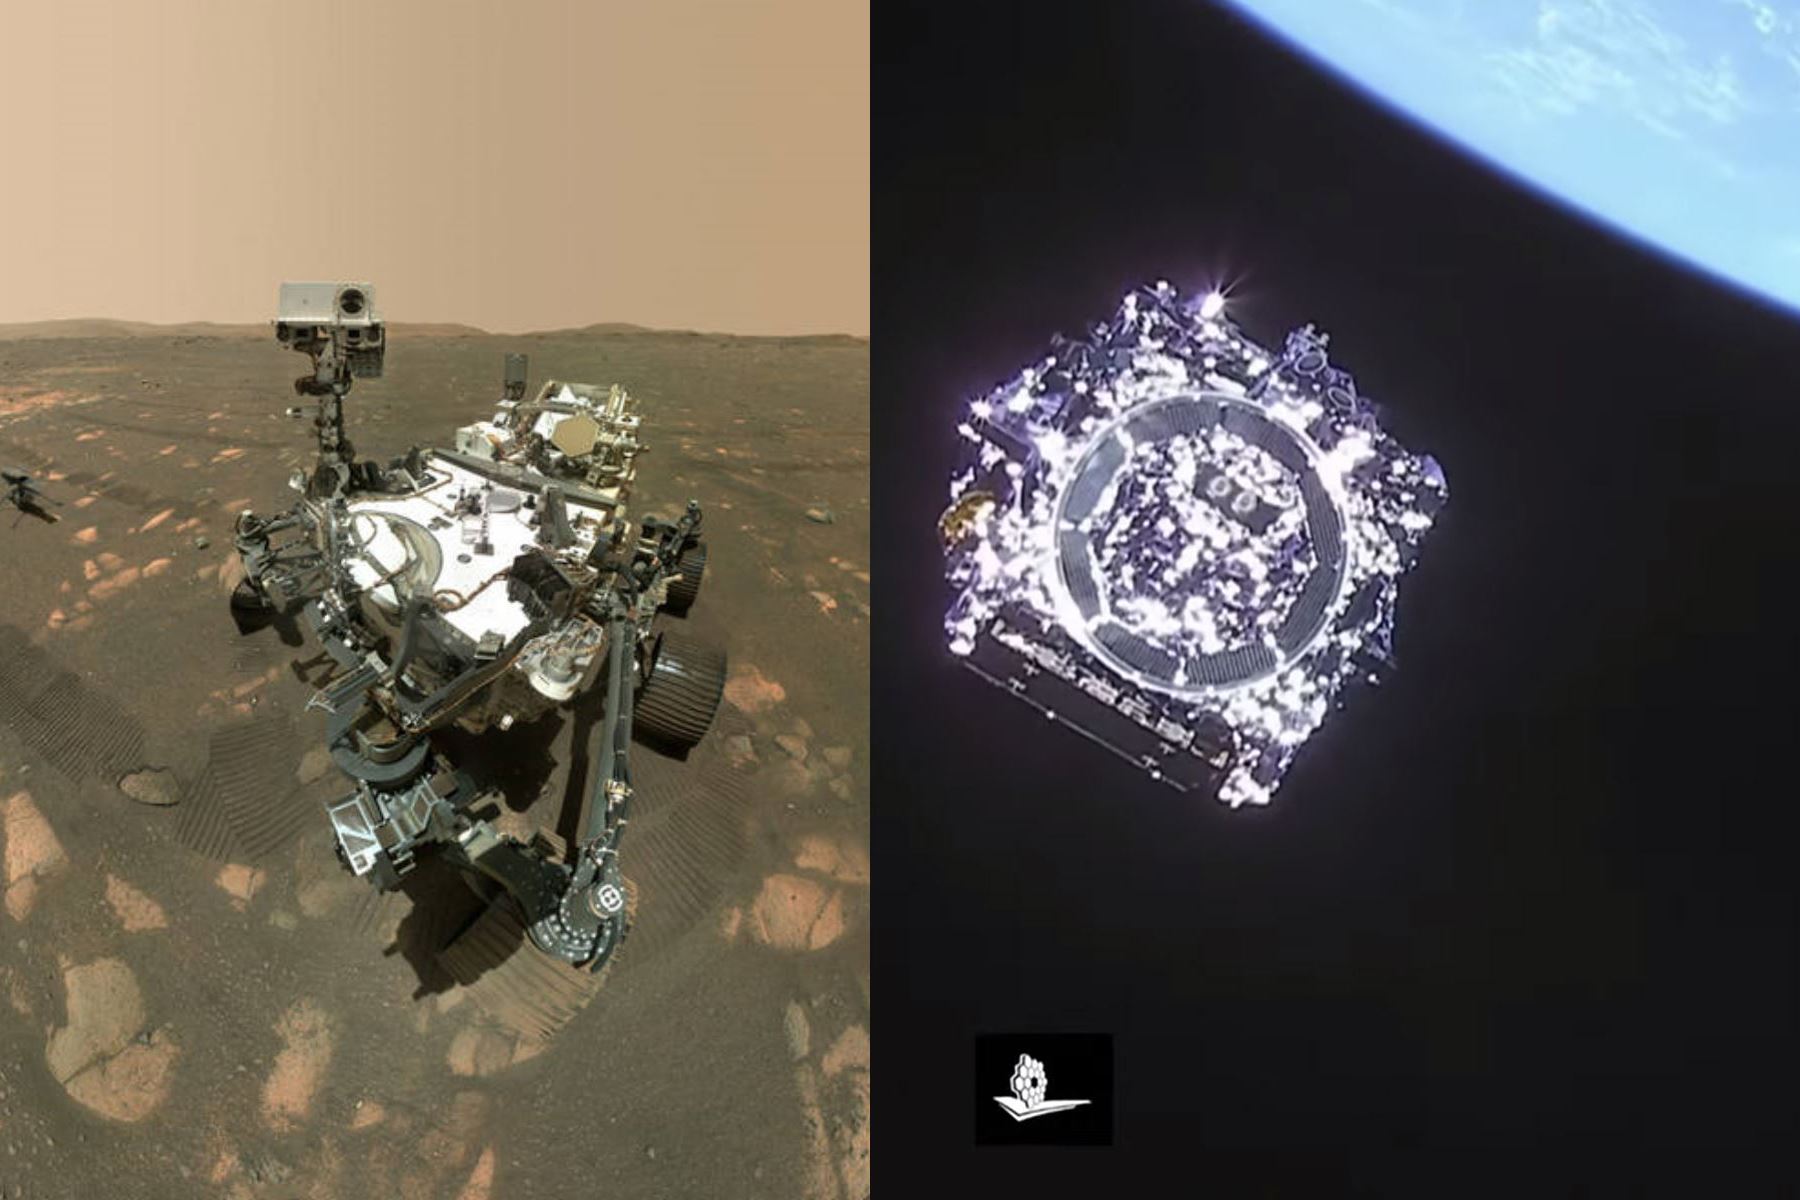 El telescopio espacial James Webb se encuentra en ruta a su punto de observación en el espacio, mientras que el rover Perseverance continúa en Marte para su misión. Foto: NASA/AFP